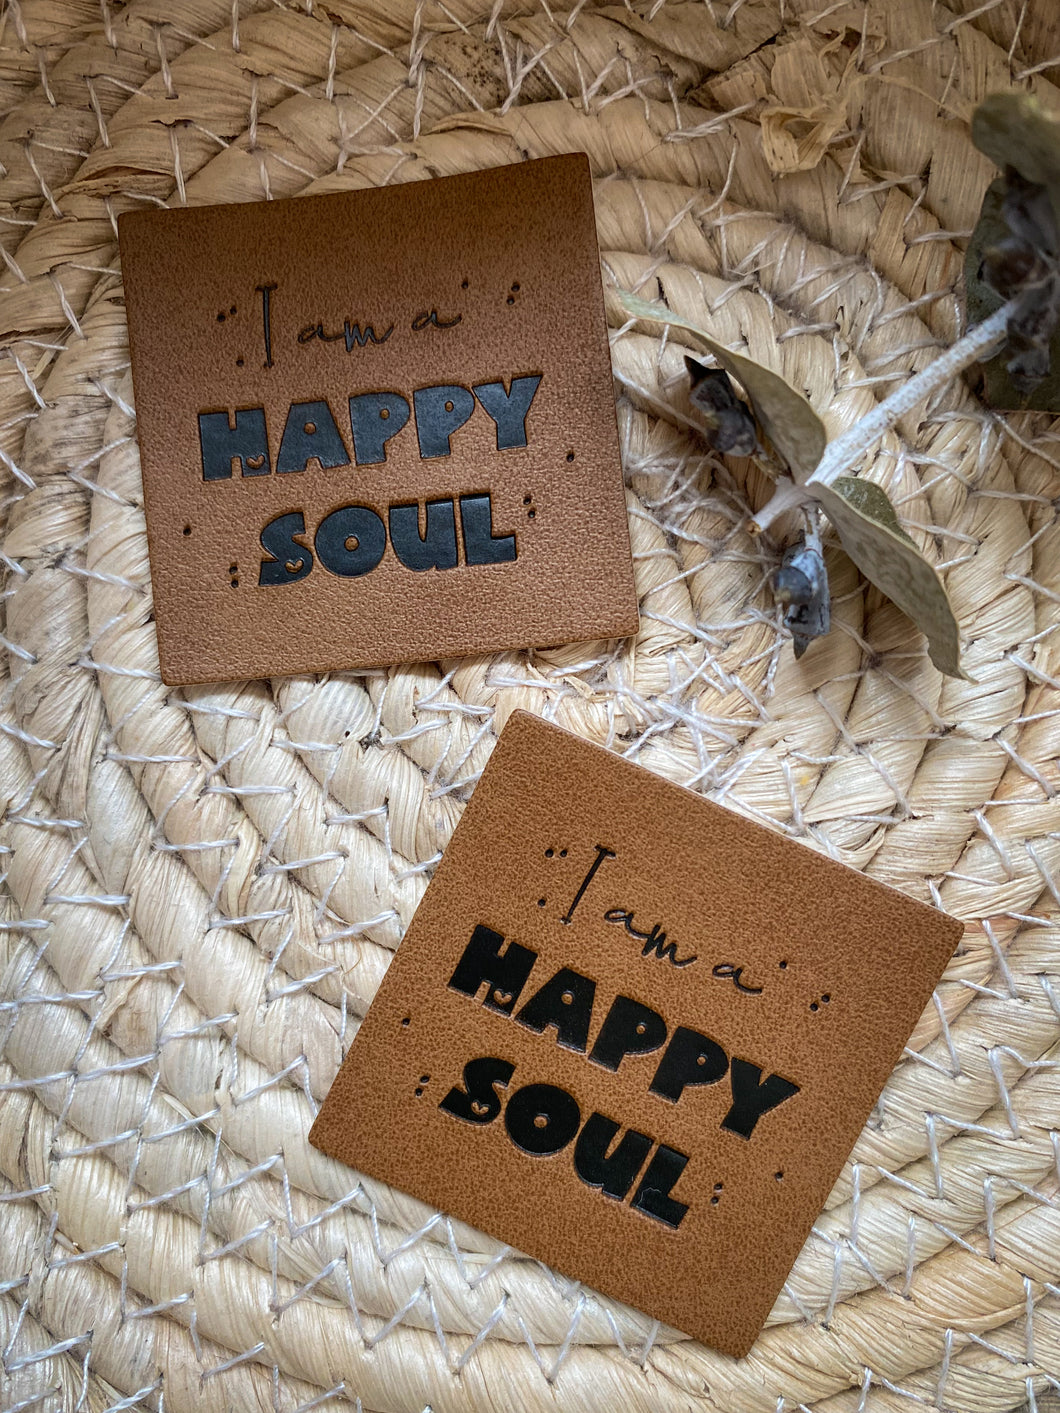 I am a happy soul - Kunstleder Label